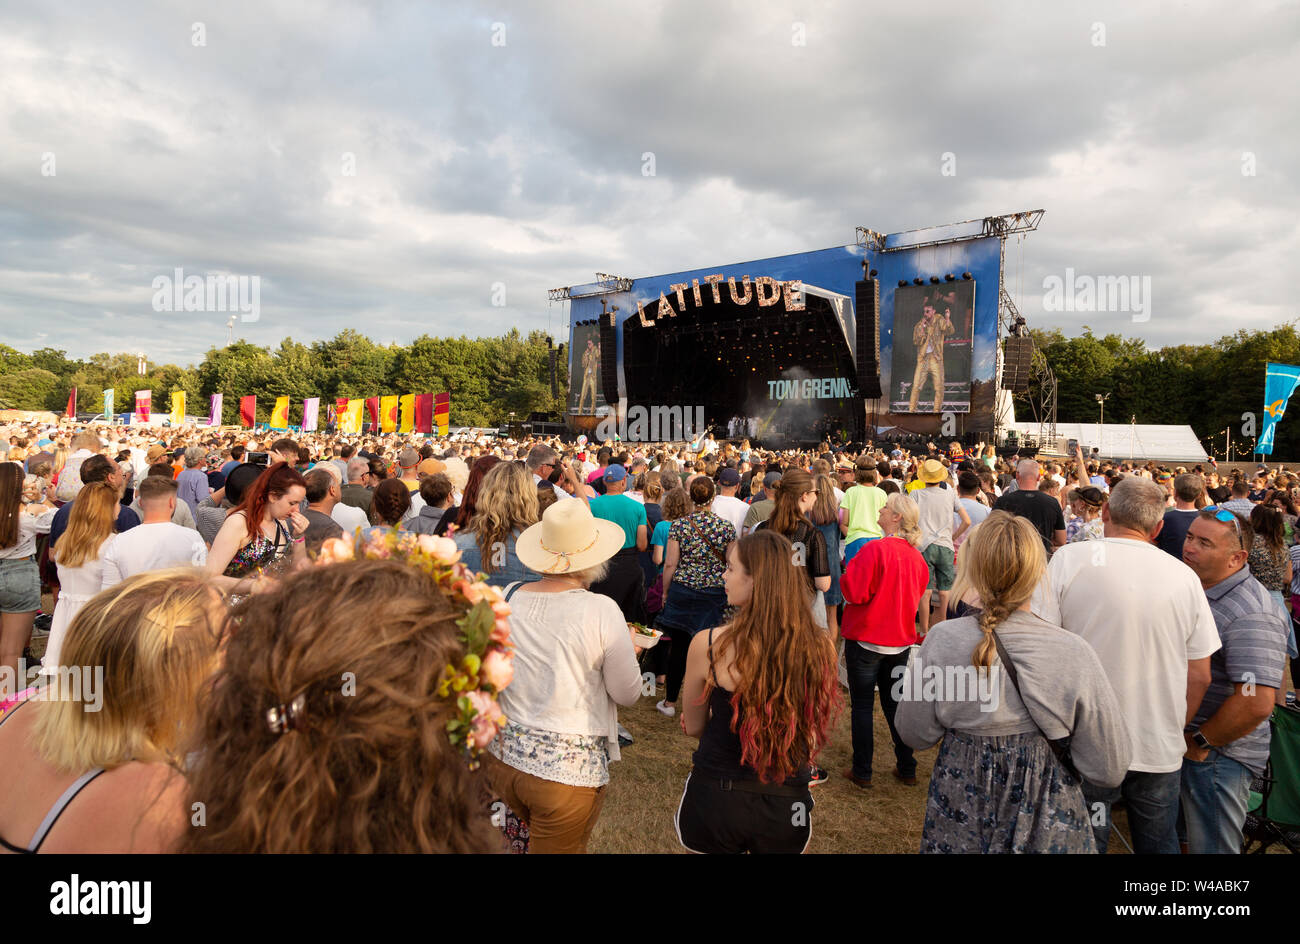 Latitude Festival Suffolk UK-Tom Grennan durchführen auf der Hauptbühne, Obelisk Arena withf Eine große Volksmenge; Latitude Festival, Suffolk, Großbritannien 2019 Stockfoto